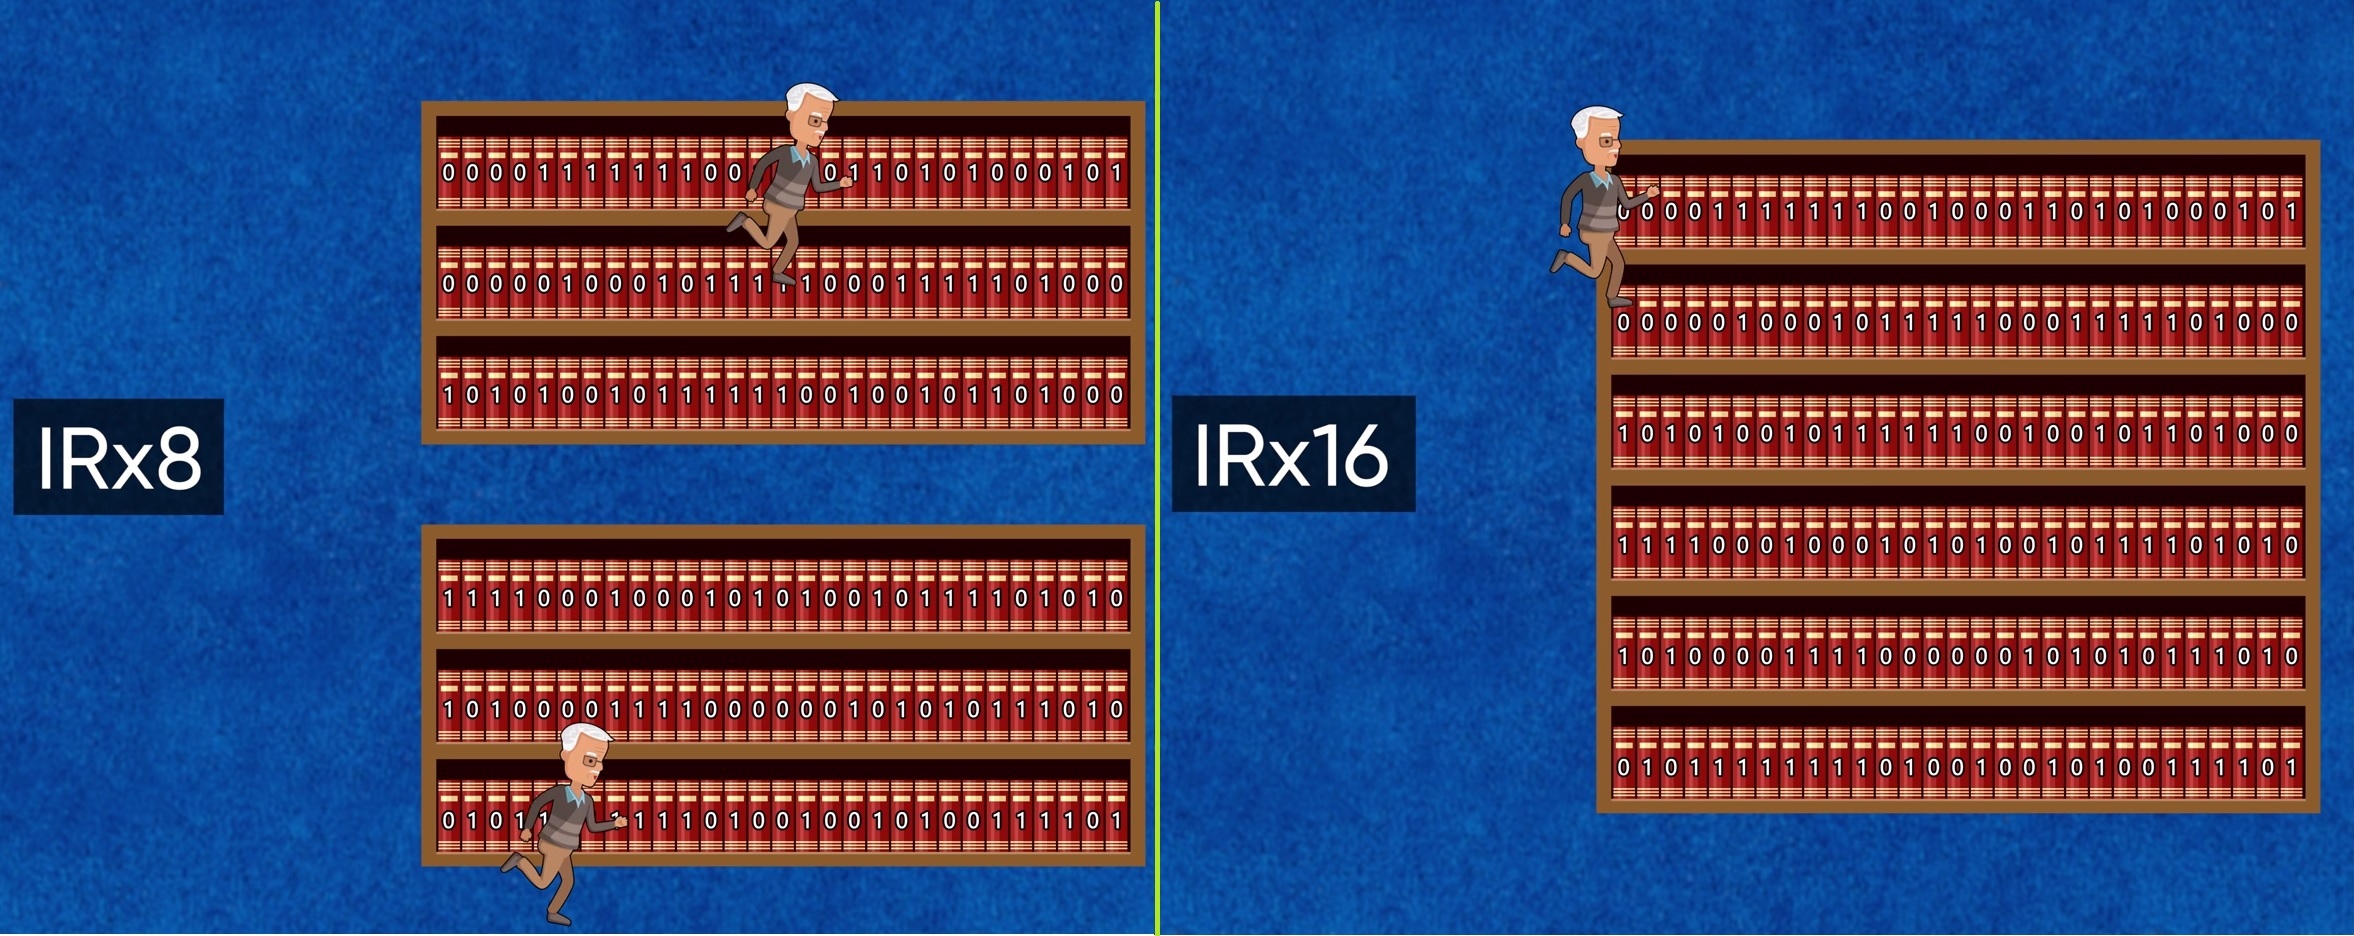 IRx8 vs IRx16